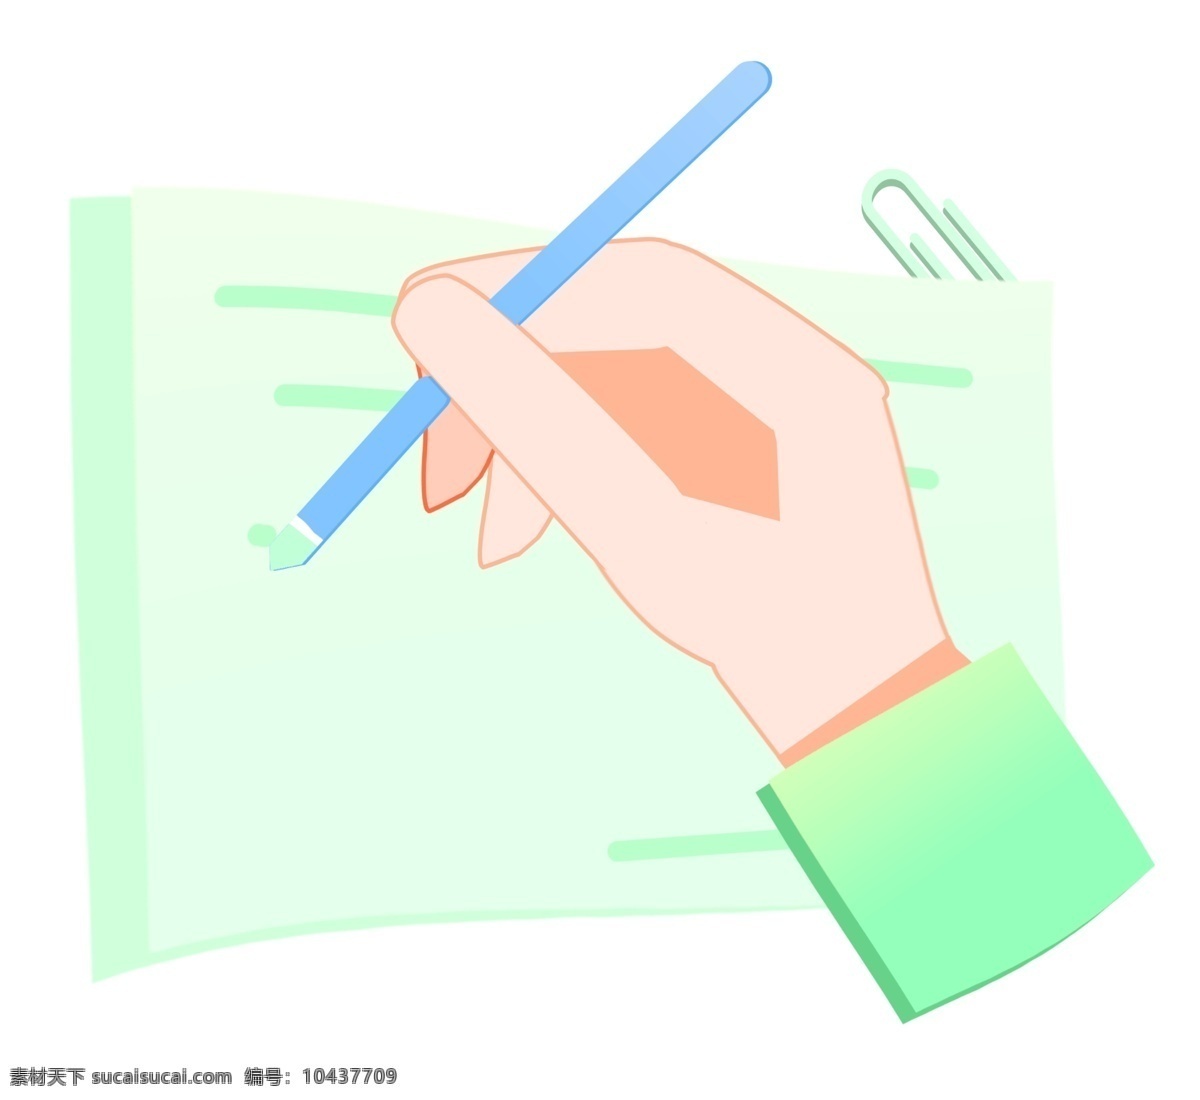 笔 写字 手势 插画 手拿铅笔 握笔手势插画 卡通手势 创意手势插画 蓝色的铅笔 绿色的纸张 绿色曲别针